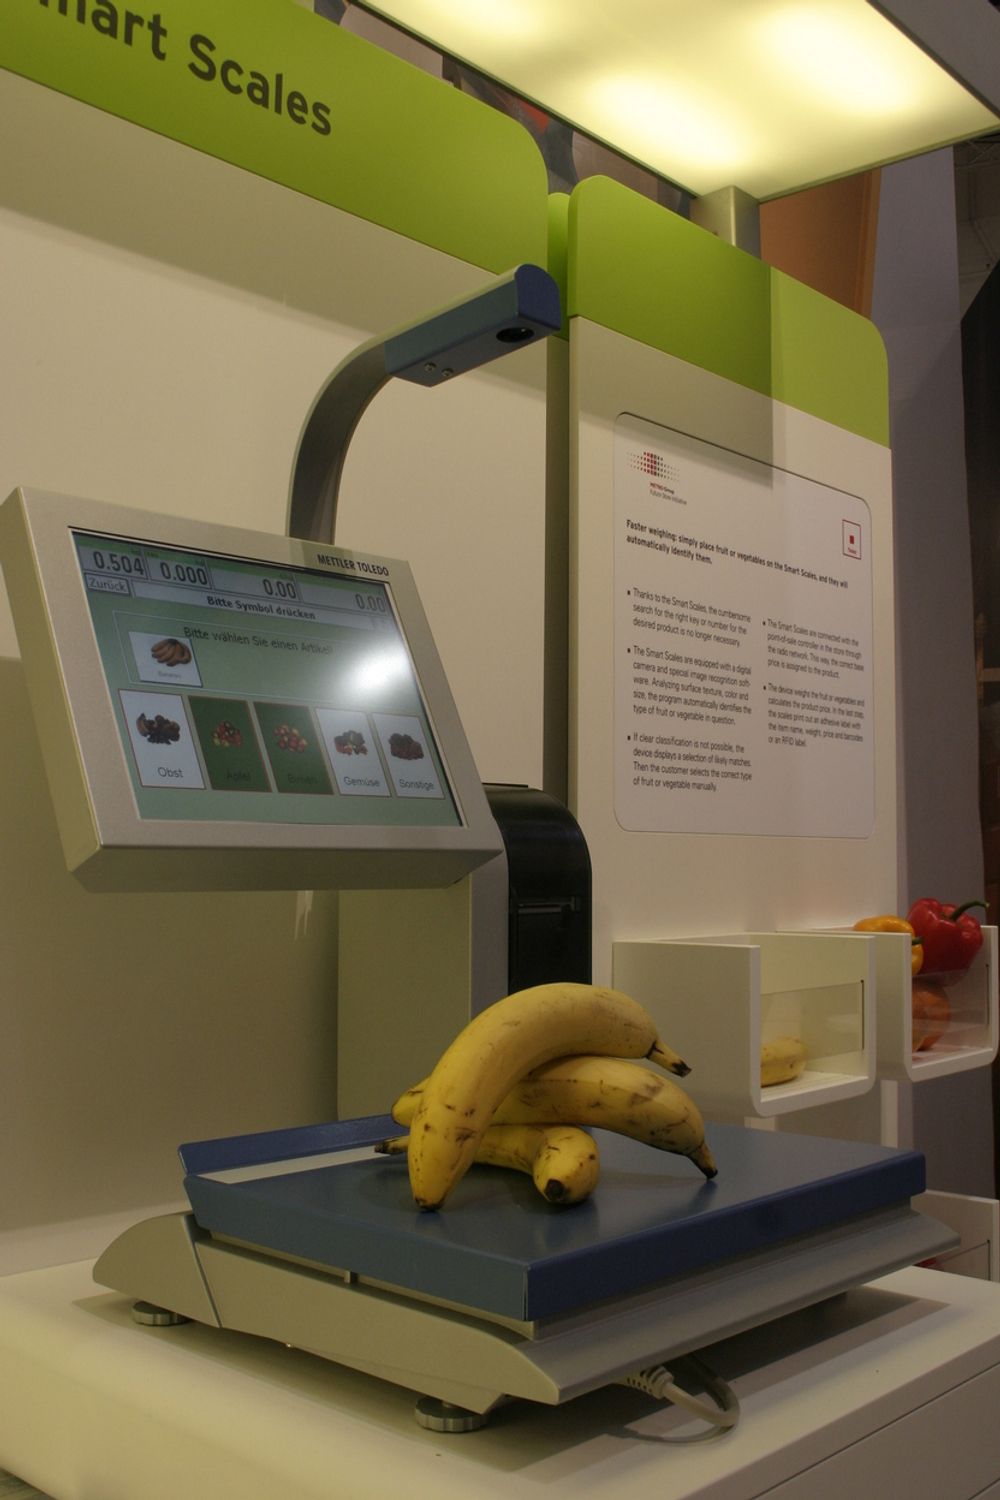 SCANNER FRUKT: Metro Group avbilder frukt med et spesielt kamera. Det finner ut hvilken frukt du veier og printer deretter ut vekt og pris automatisk.